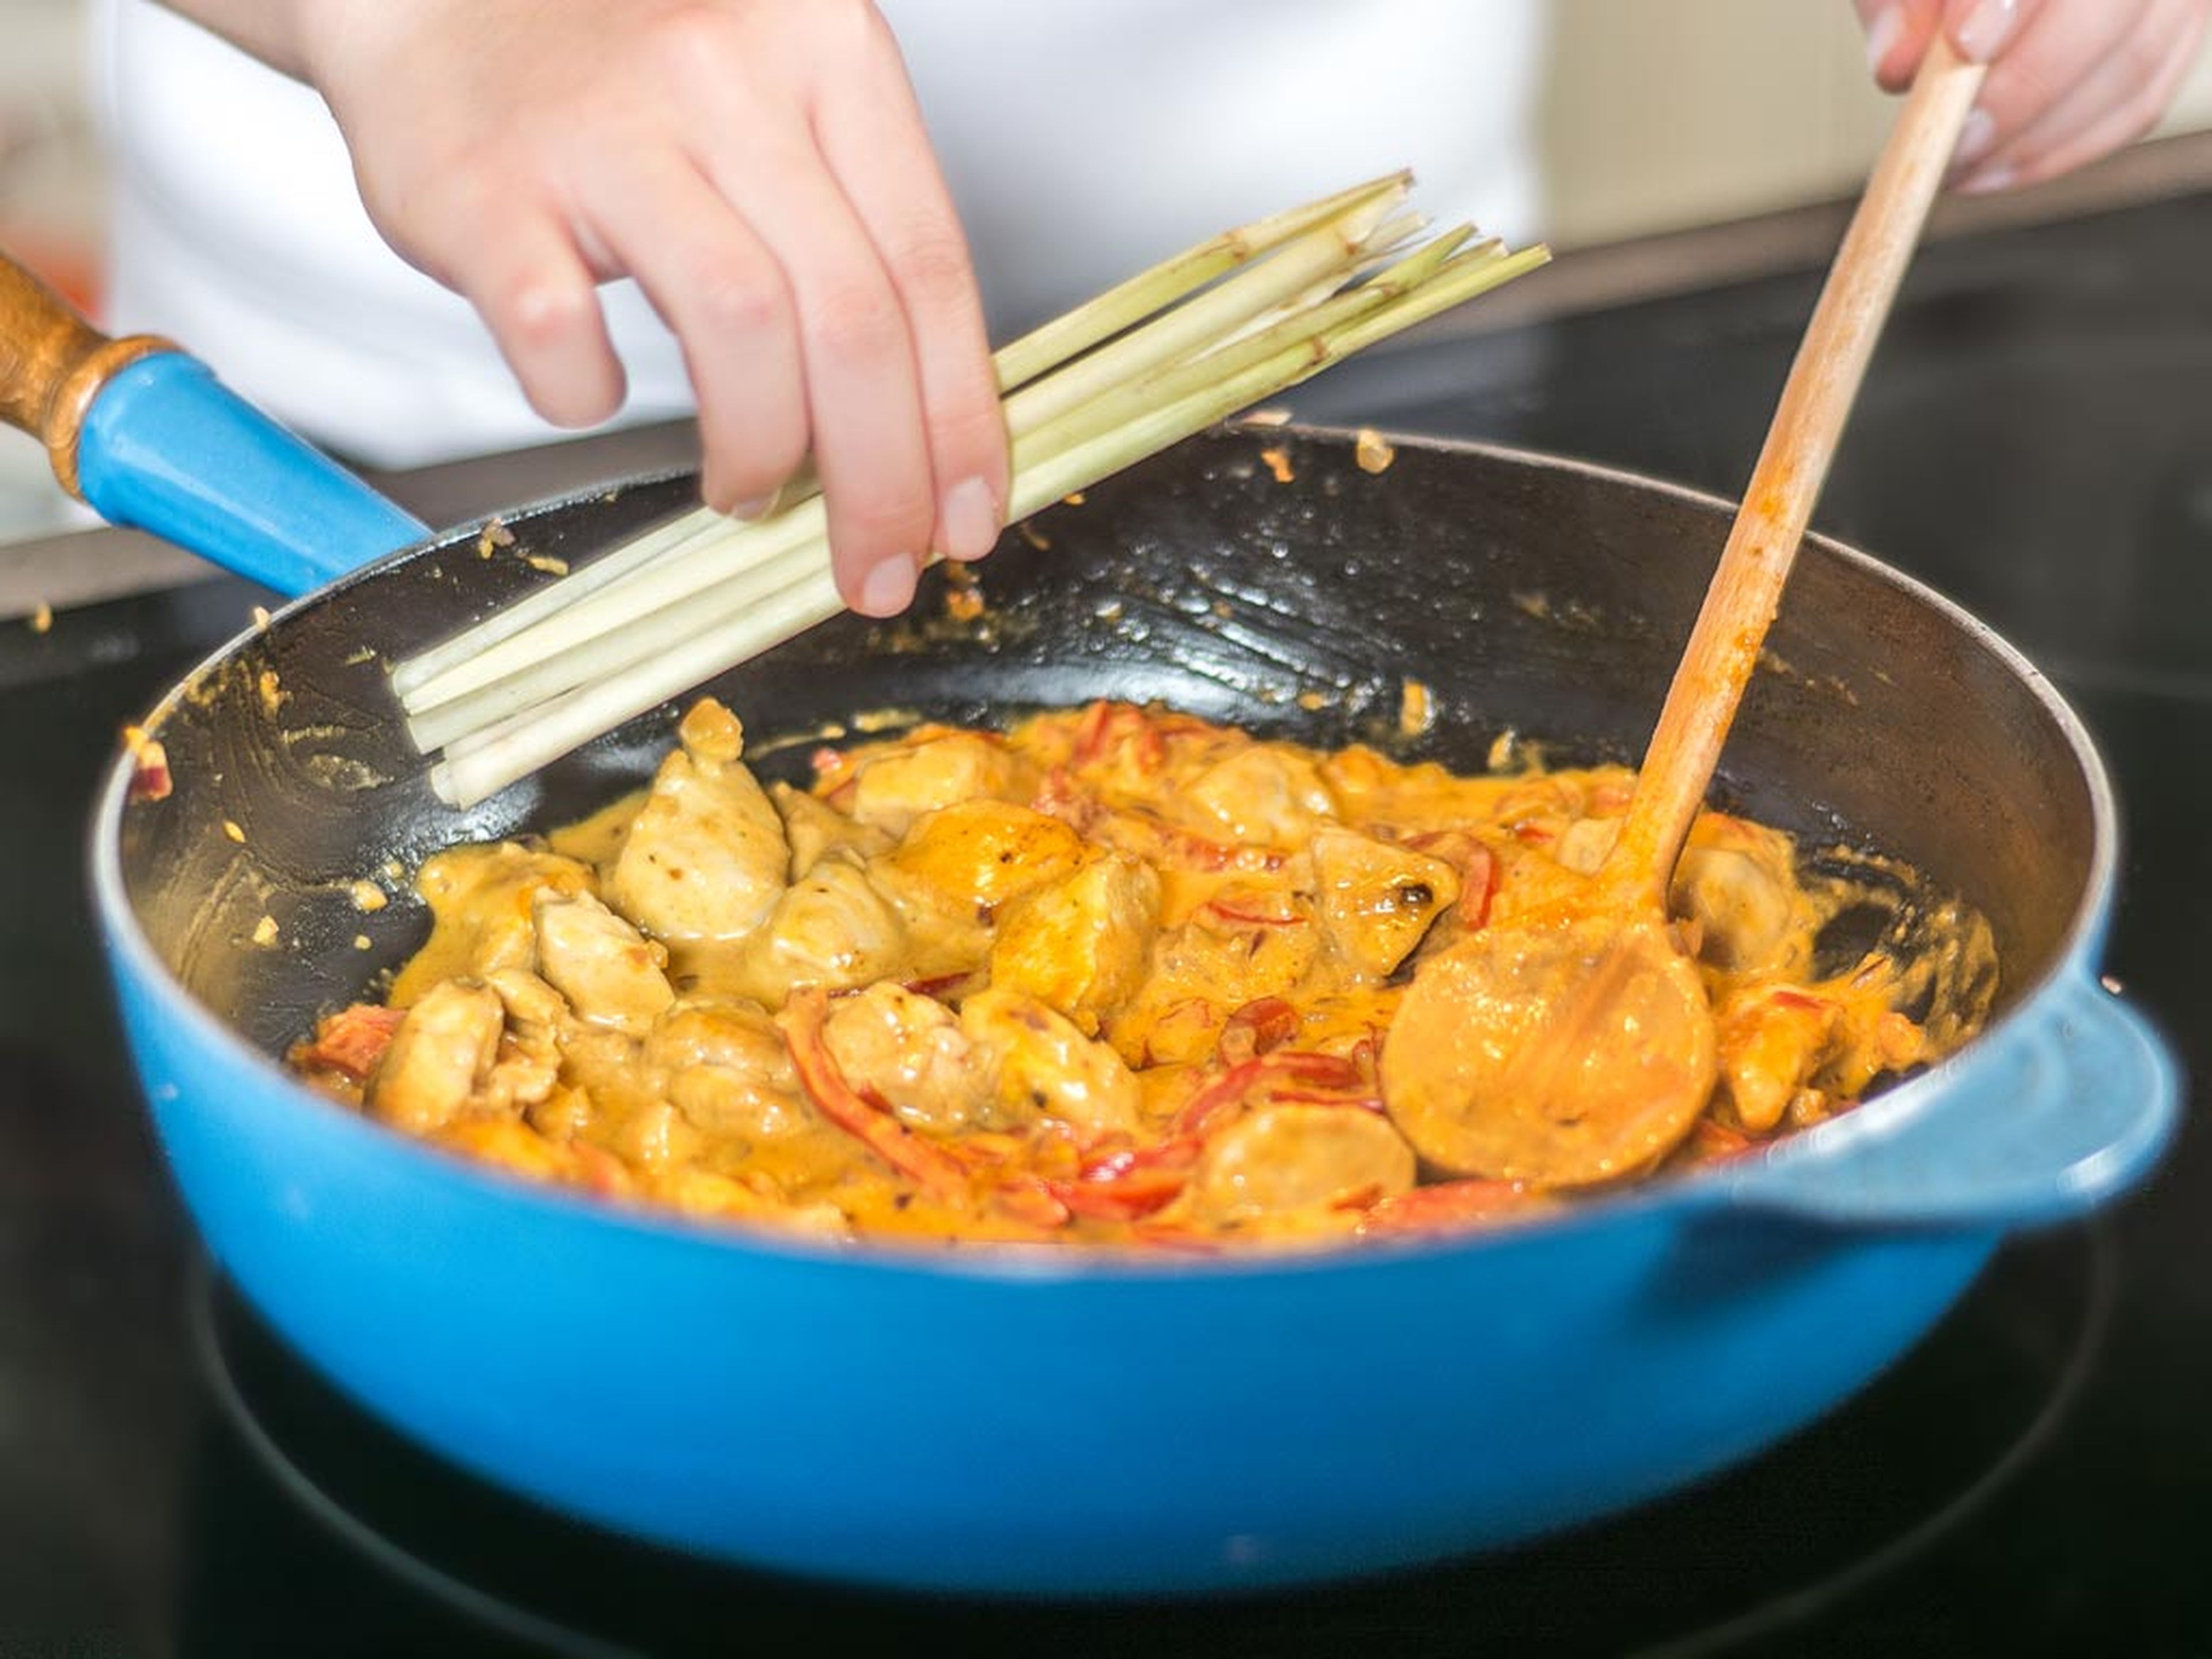 Currypaste, Kurkuma und Kokosmilch hinzugeben. Kichererbsen abtropfen lassen und mit angeklopftem Zitronengras ebenso in die Pfanne geben. Alles leicht aufkochen lassen.